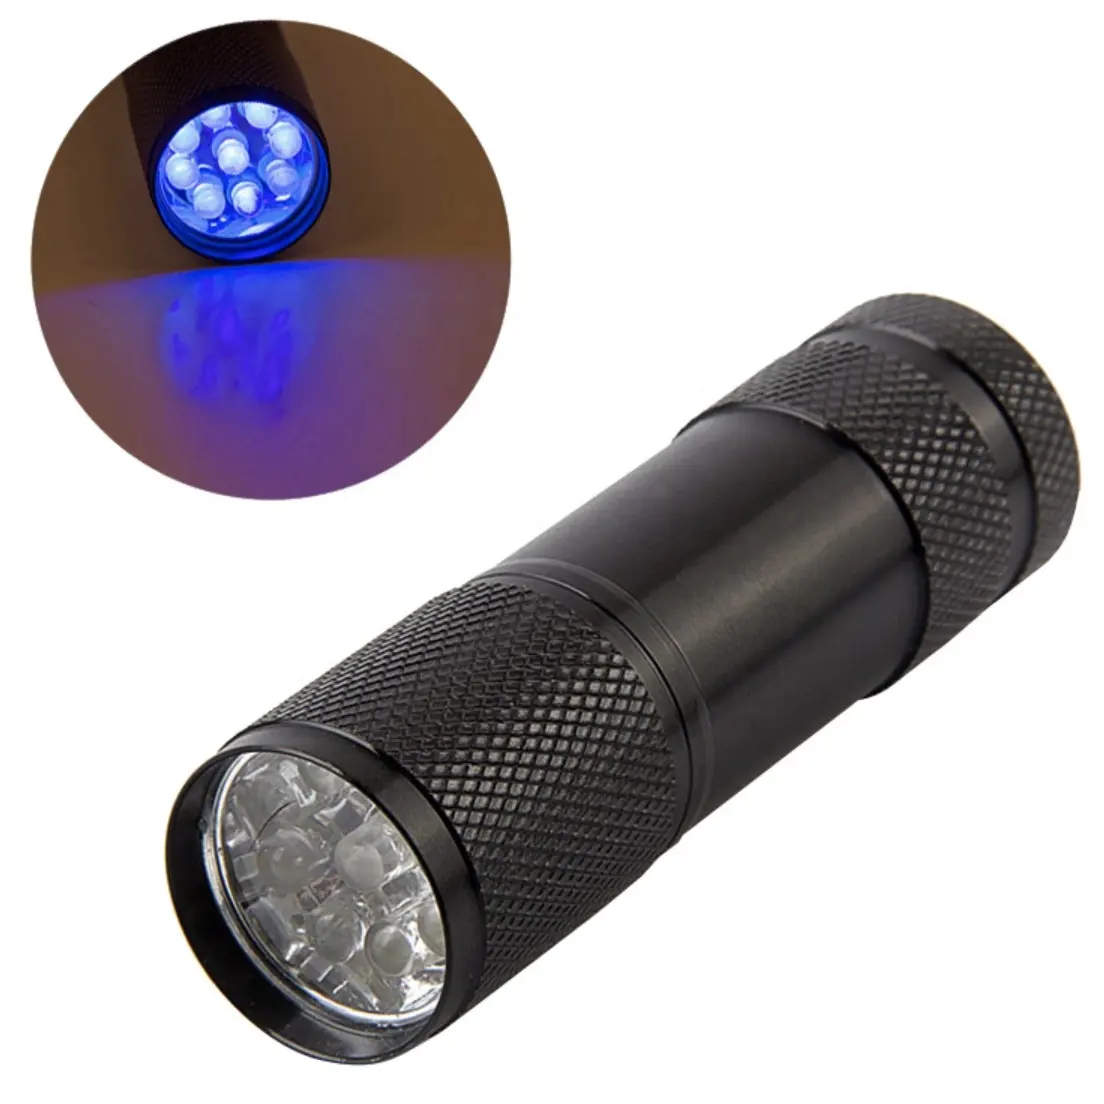 Clover UV 9 LED Mini Blacklight Senter Obor Lampu 395nM UV Senter untuk Scorpion Detektor Uang Pemburu Finder